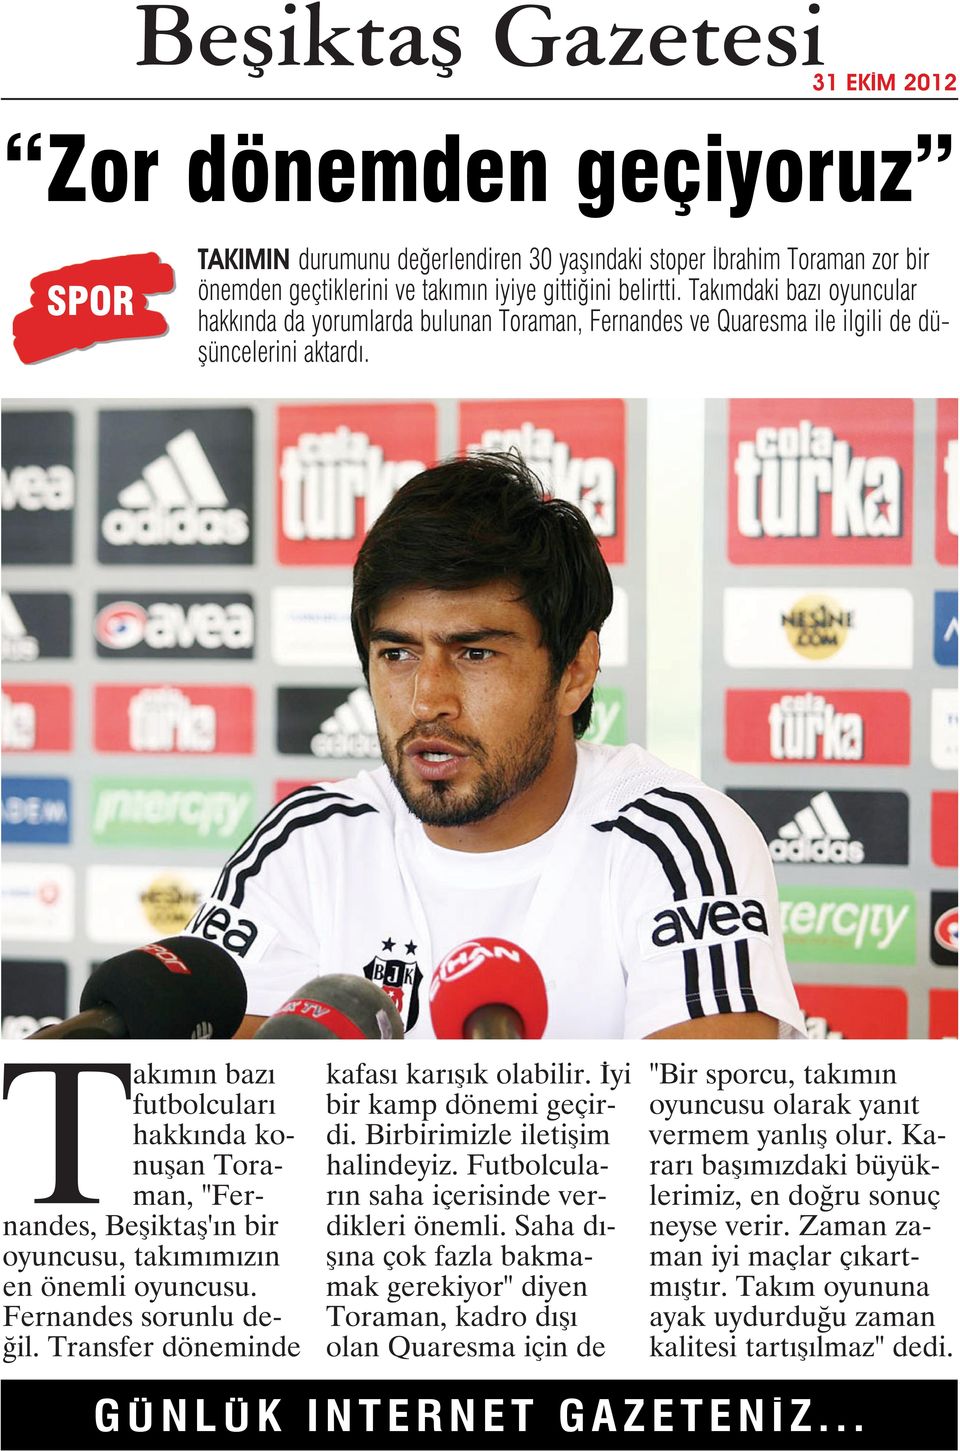 Takımın bazı futbolcuları hakkında konuşan Toraman, "Fernandes, Beşiktaş'ın bir oyuncusu, takımımızın en önemli oyuncusu. Fernandes sorunlu değil. Transfer döneminde kafası karışık olabilir.